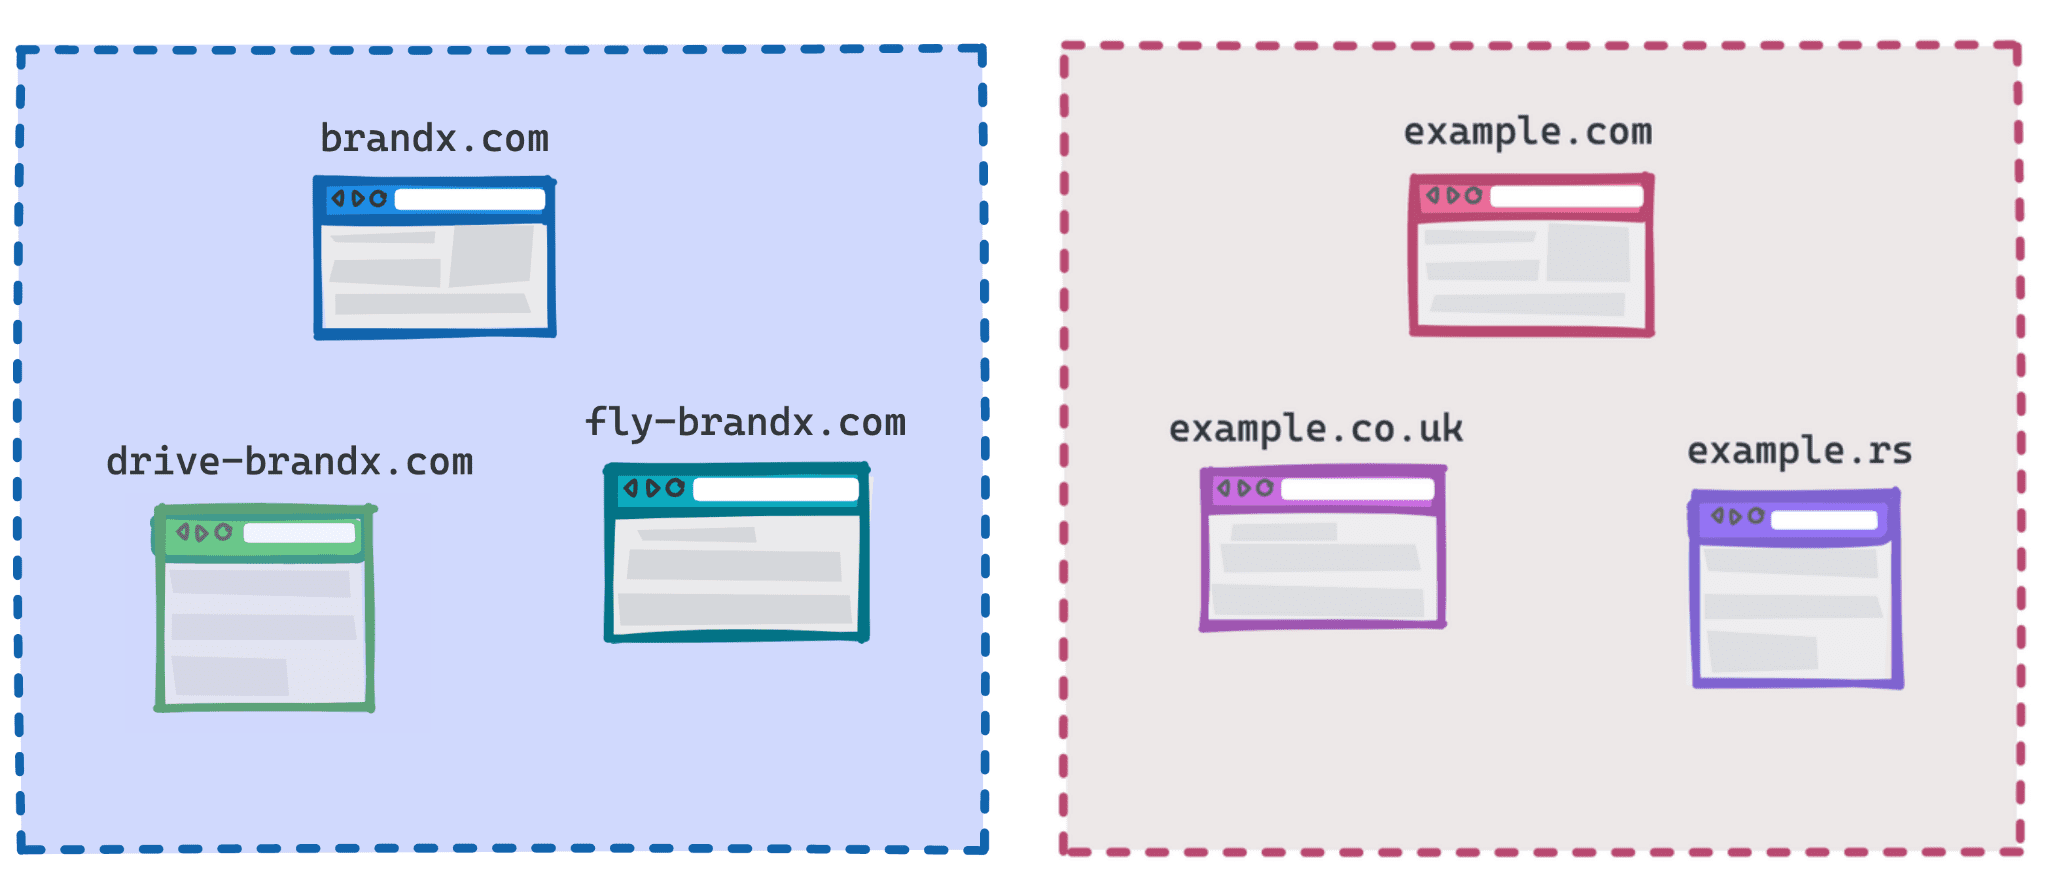 ডায়াগ্রাম দেখাচ্ছে brandx.com, fly-brandx.com এবং drive-brandx.com একটি গ্রুপ হিসেবে এবং example.com, example.rs, example.co.uk অন্য গ্রুপ হিসেবে।